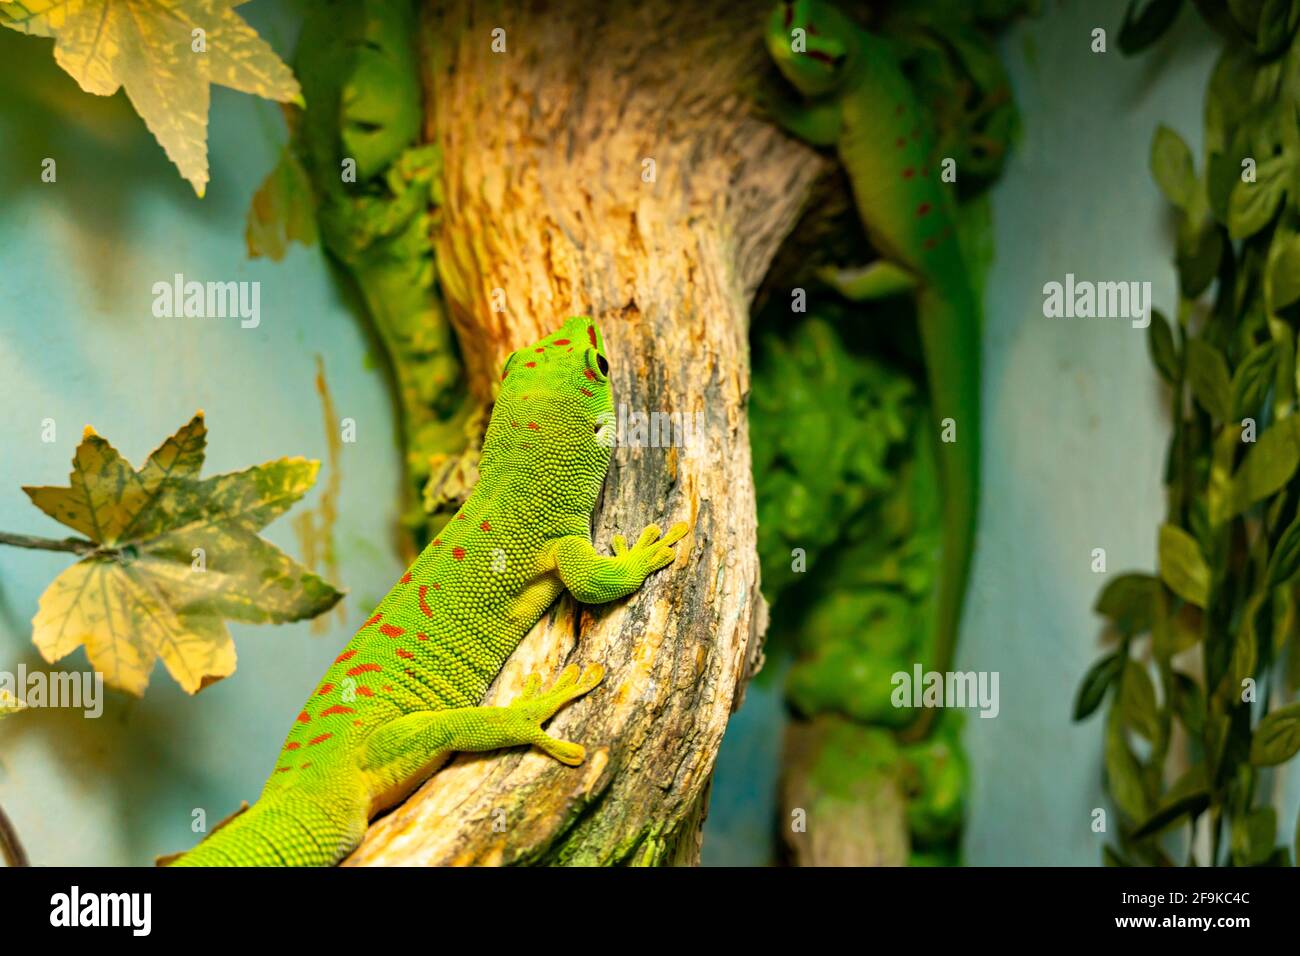 Un petit gecko vert et jaune de Madagascar jour s'assoit sur la branche de près. Le reptile Phelsuma respire sous le soleil éclatant de la jungle. Banque D'Images